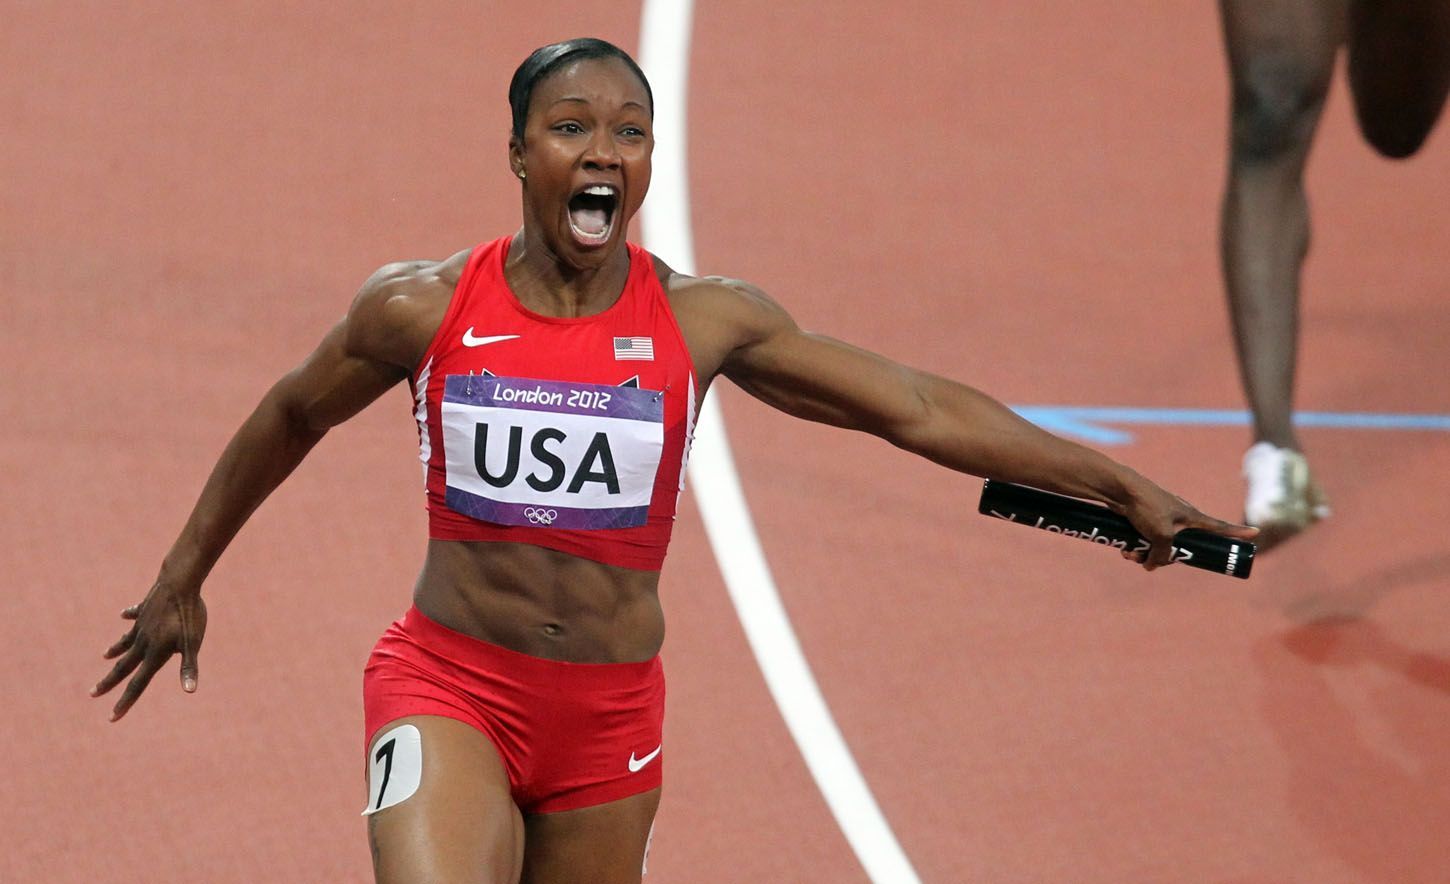 Americká sprinterka Carmelita Jeterová dobíhá štafetu na 4x400 metrů ve světovém rekordu na OH 2012 v Londýně.